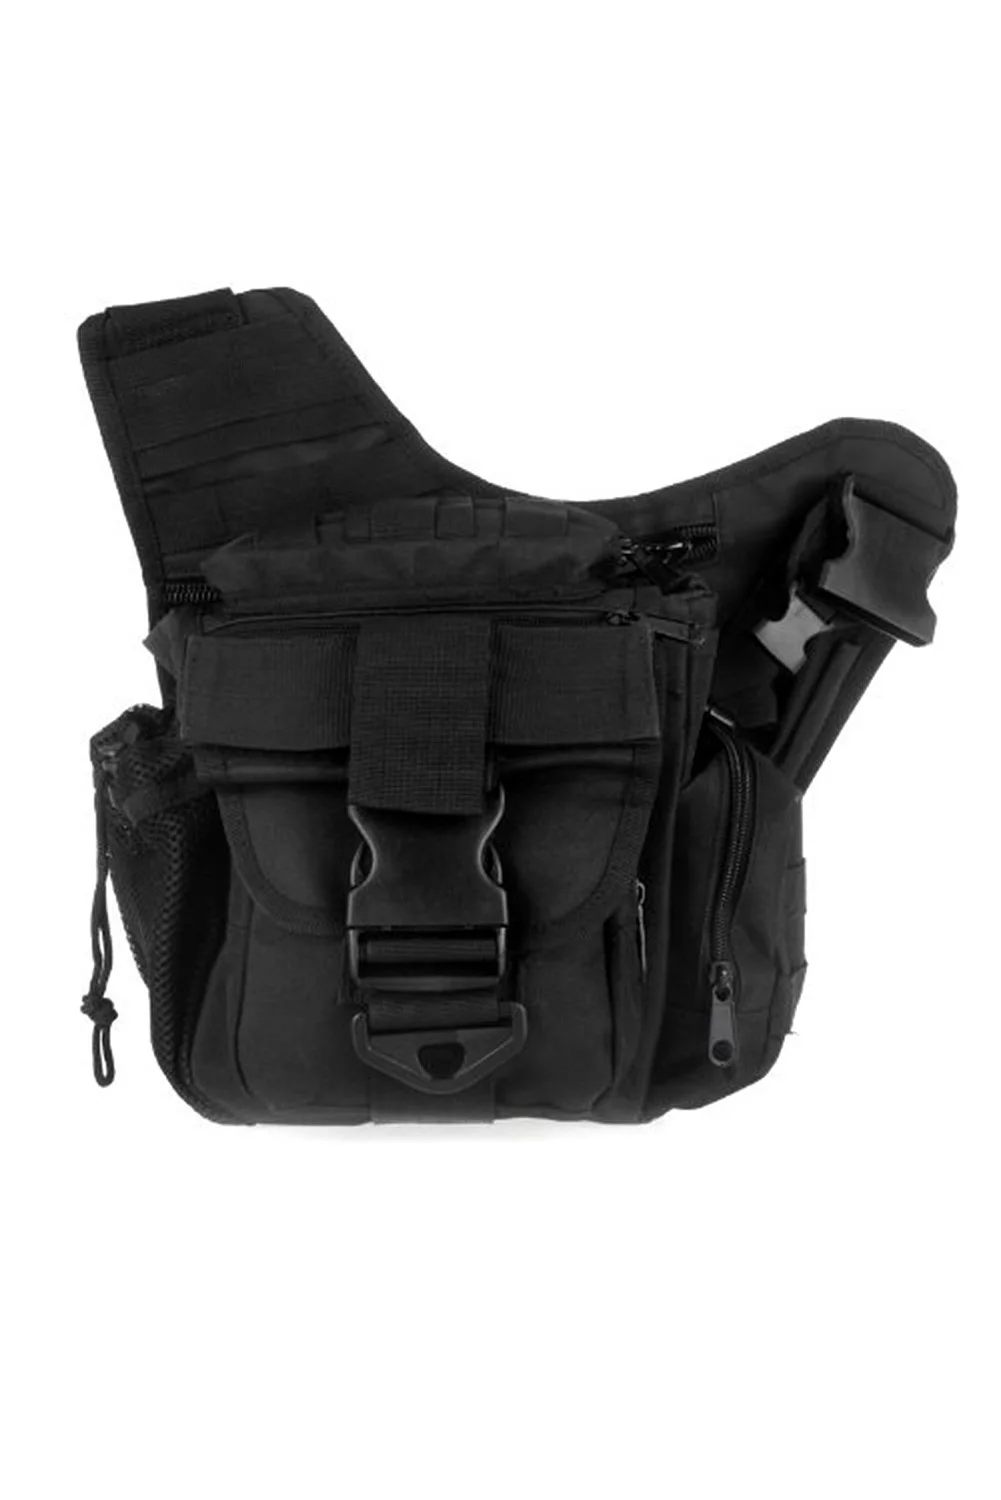 2 шт. 600D нейлон Молл плечевой ремень сумка Военная Униформа нажим пакет ремень сумка для путешествий рюкзак Камера утилита денежный мешок